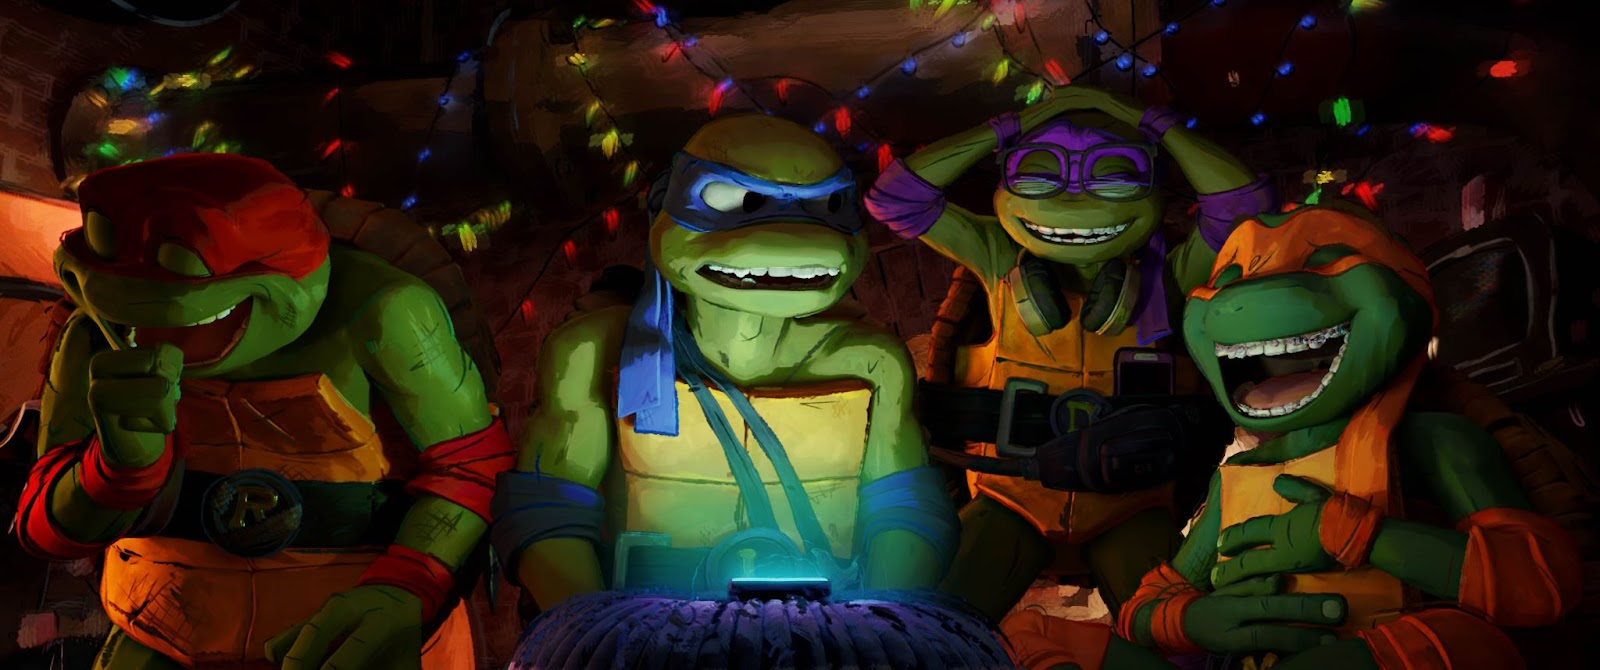 Processo de desenho e animação de “As Tartarugas Ninja: Caos Mutante” ganha destaque em novo vídeo de bastidores